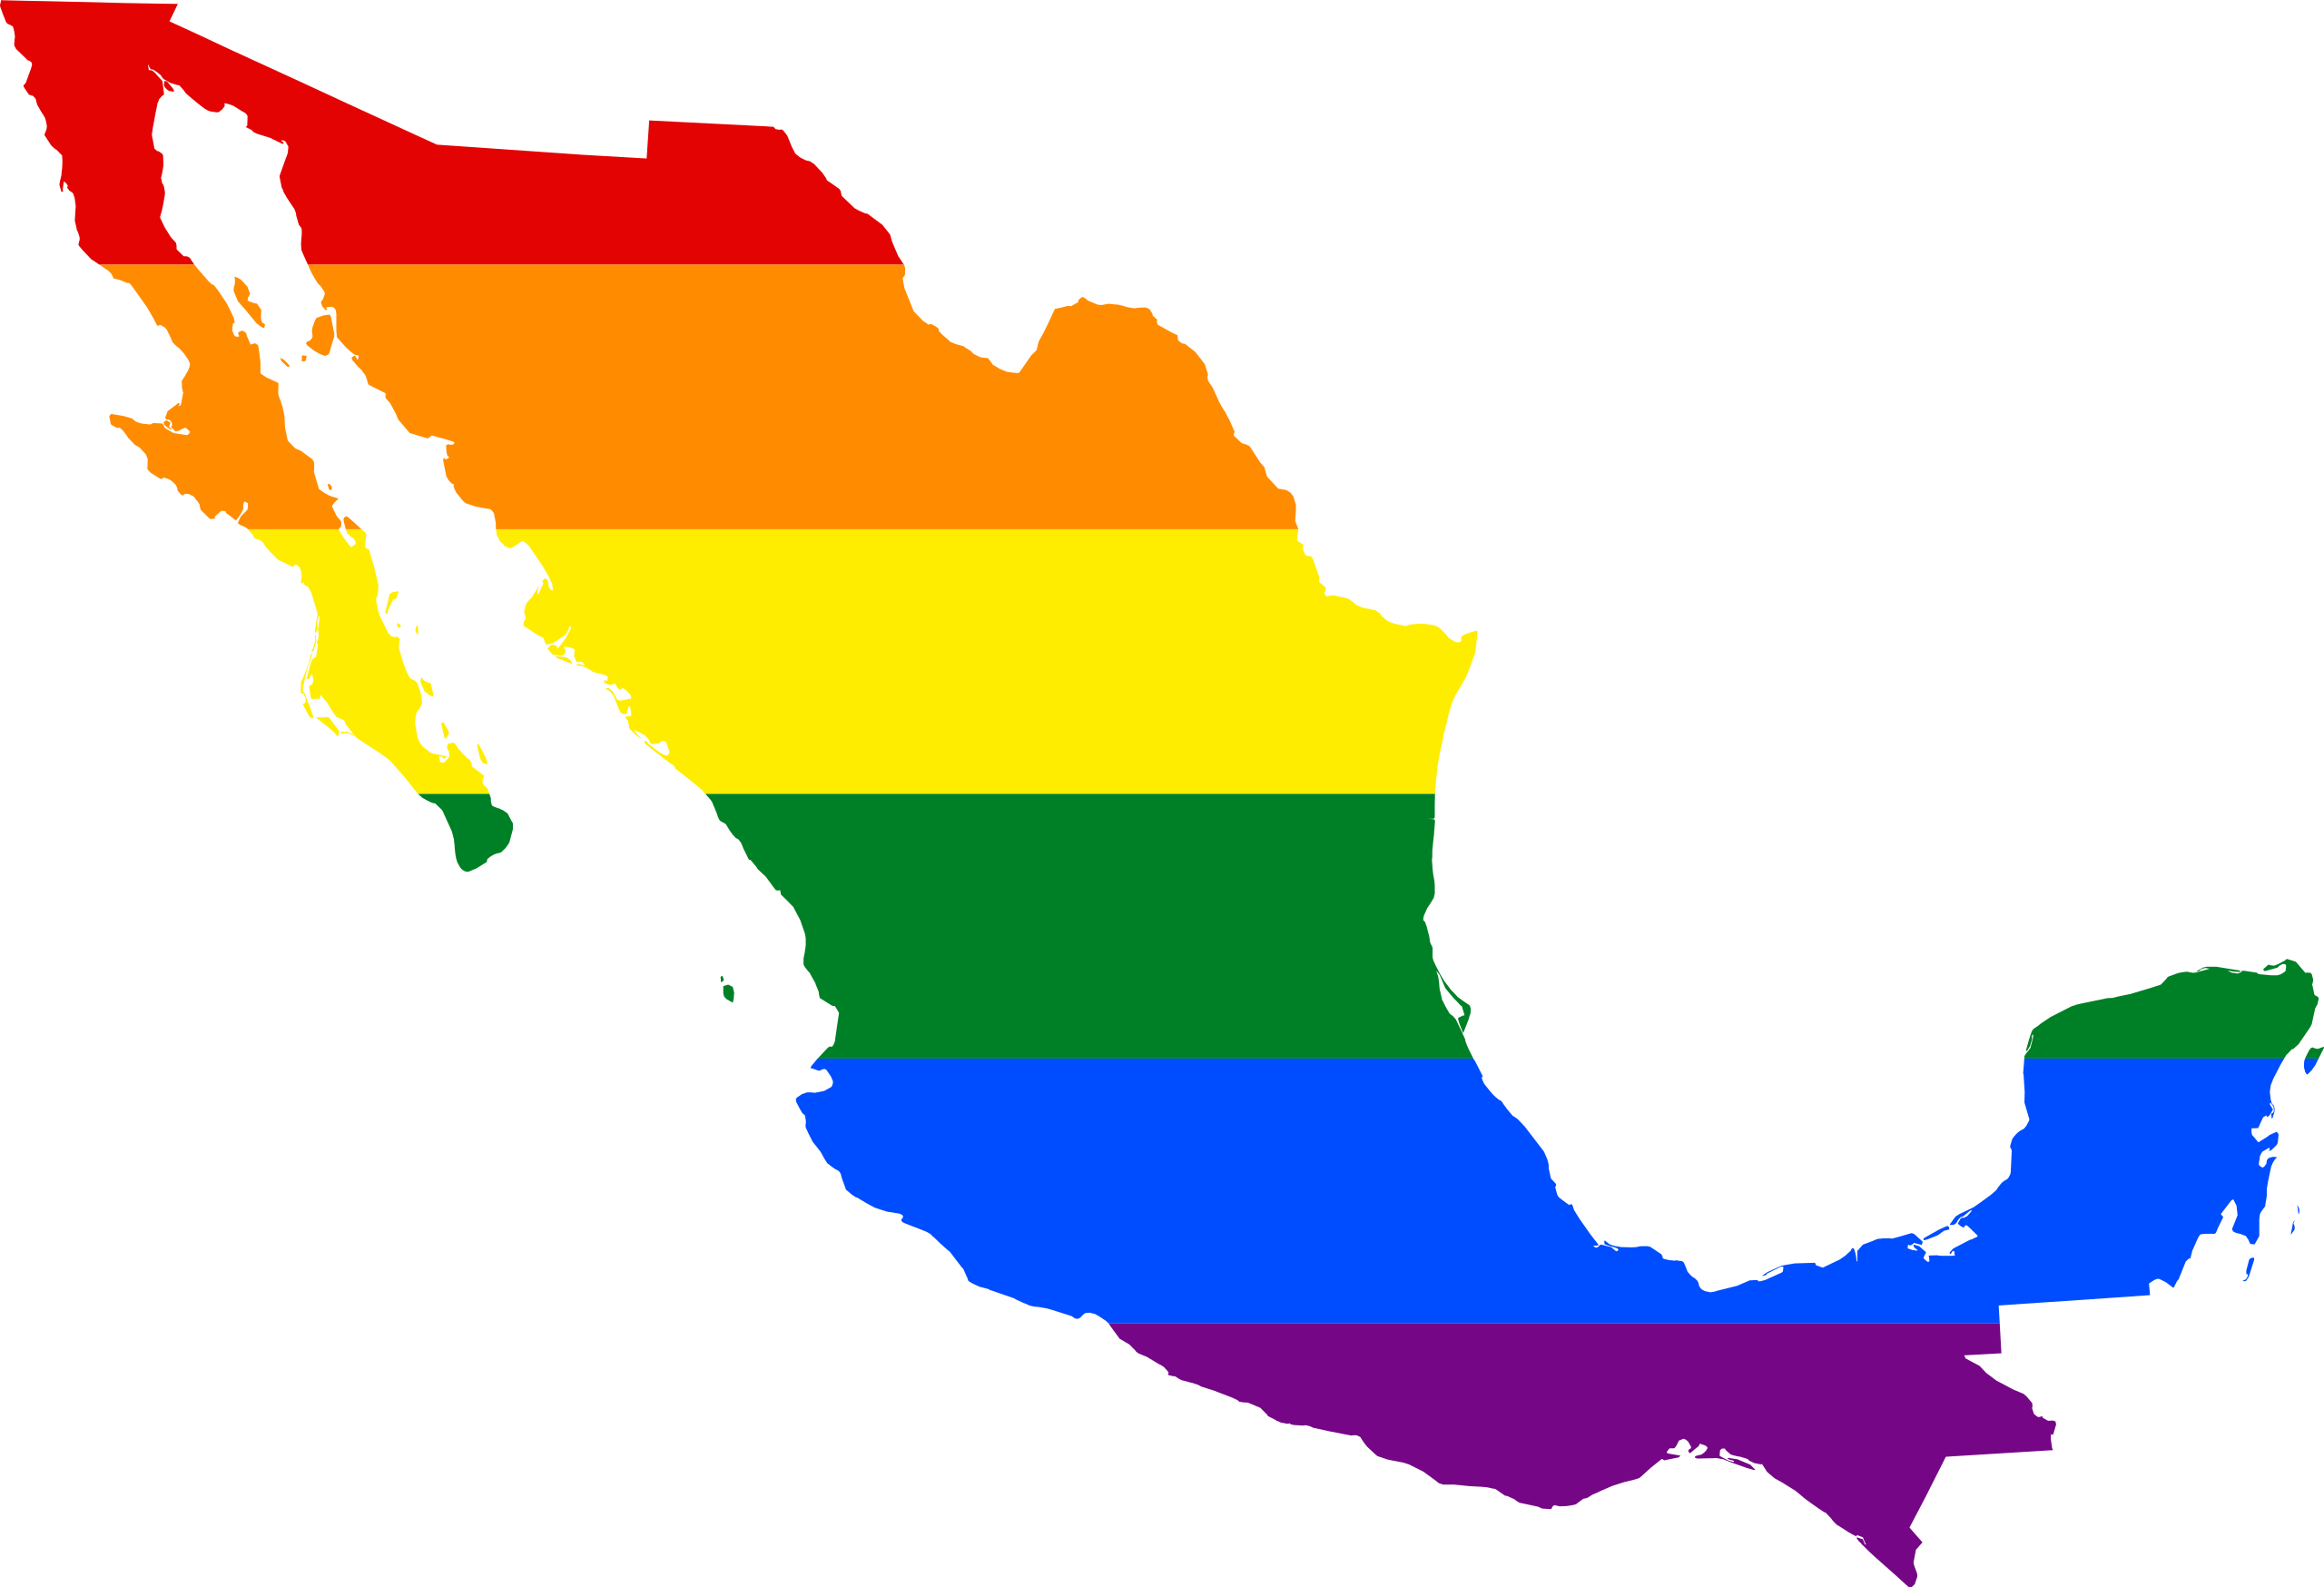 File:Wikipedia-LGBT.png - Wikipedia